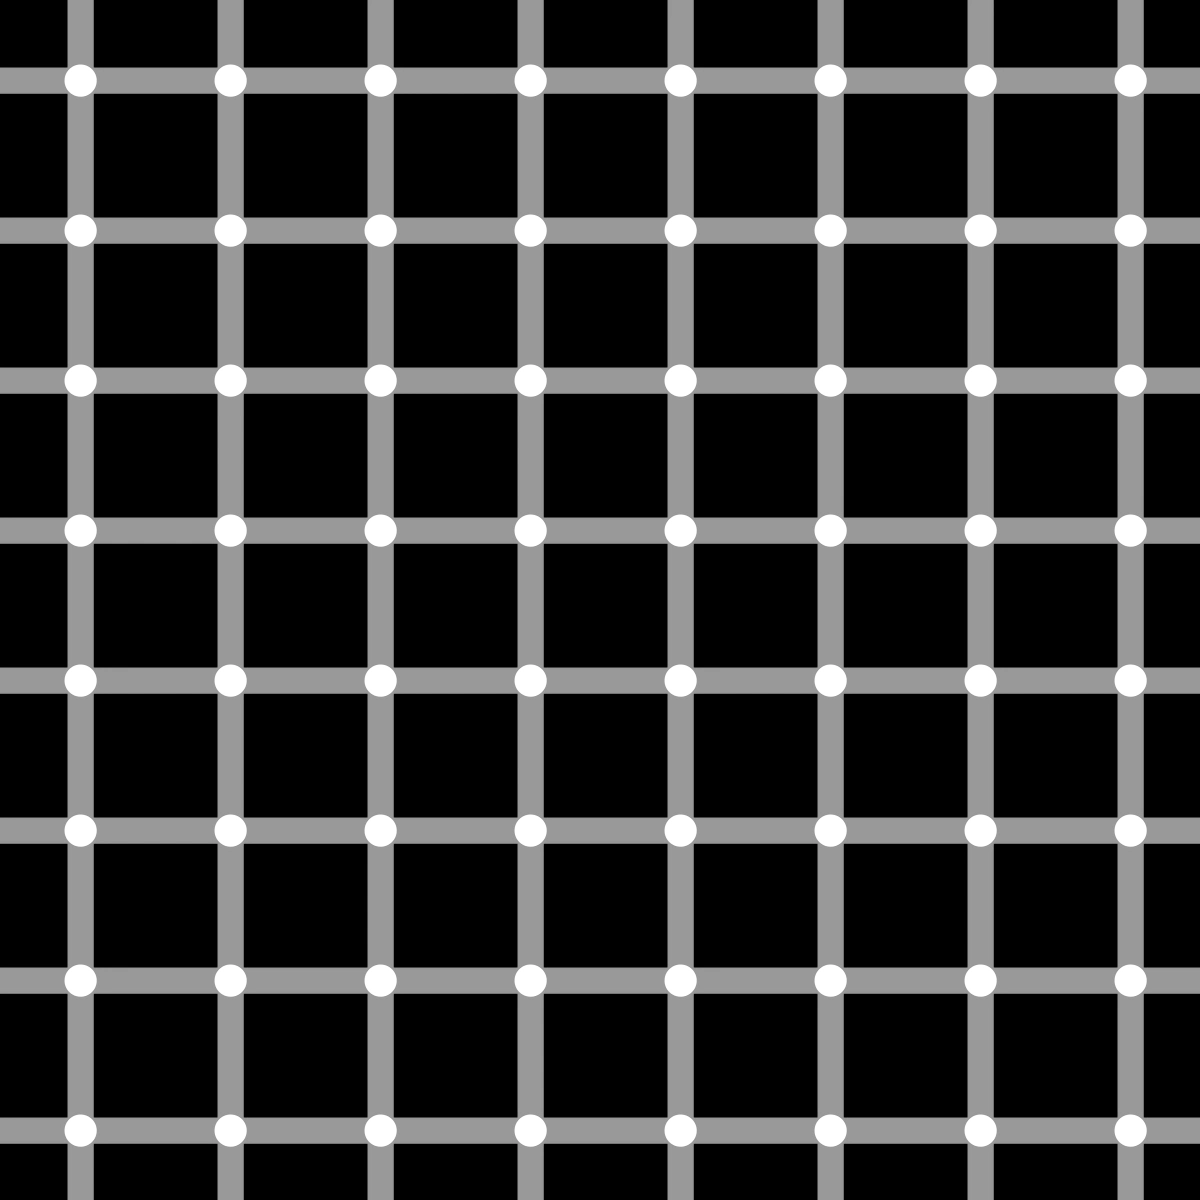 la grille d herman illusion optique